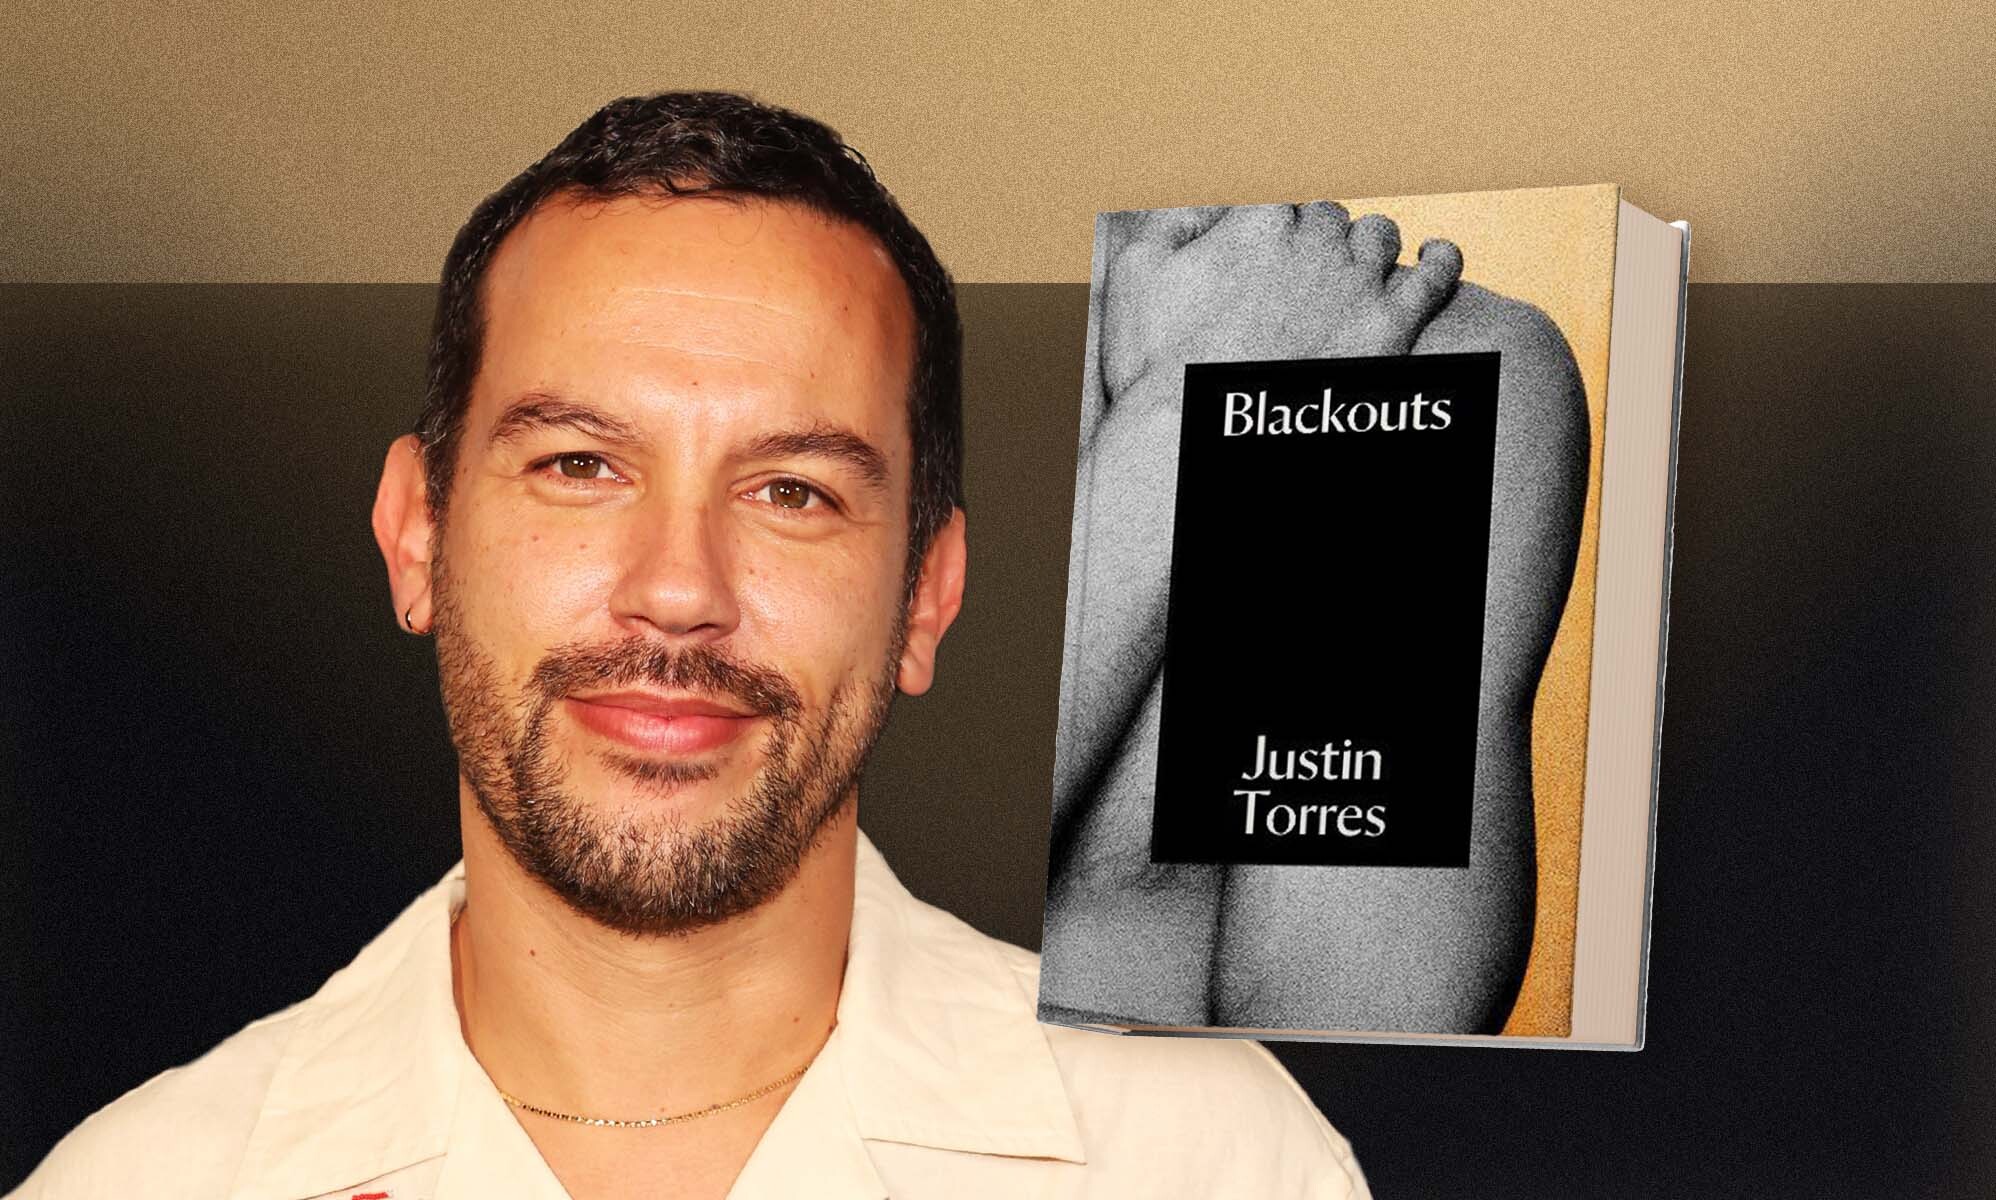 El autor Justin Torres revive la historia olvidada de Jan Gay en su provocador libro 'Blackouts' desafiando géneros y tabúes LGBTQ+